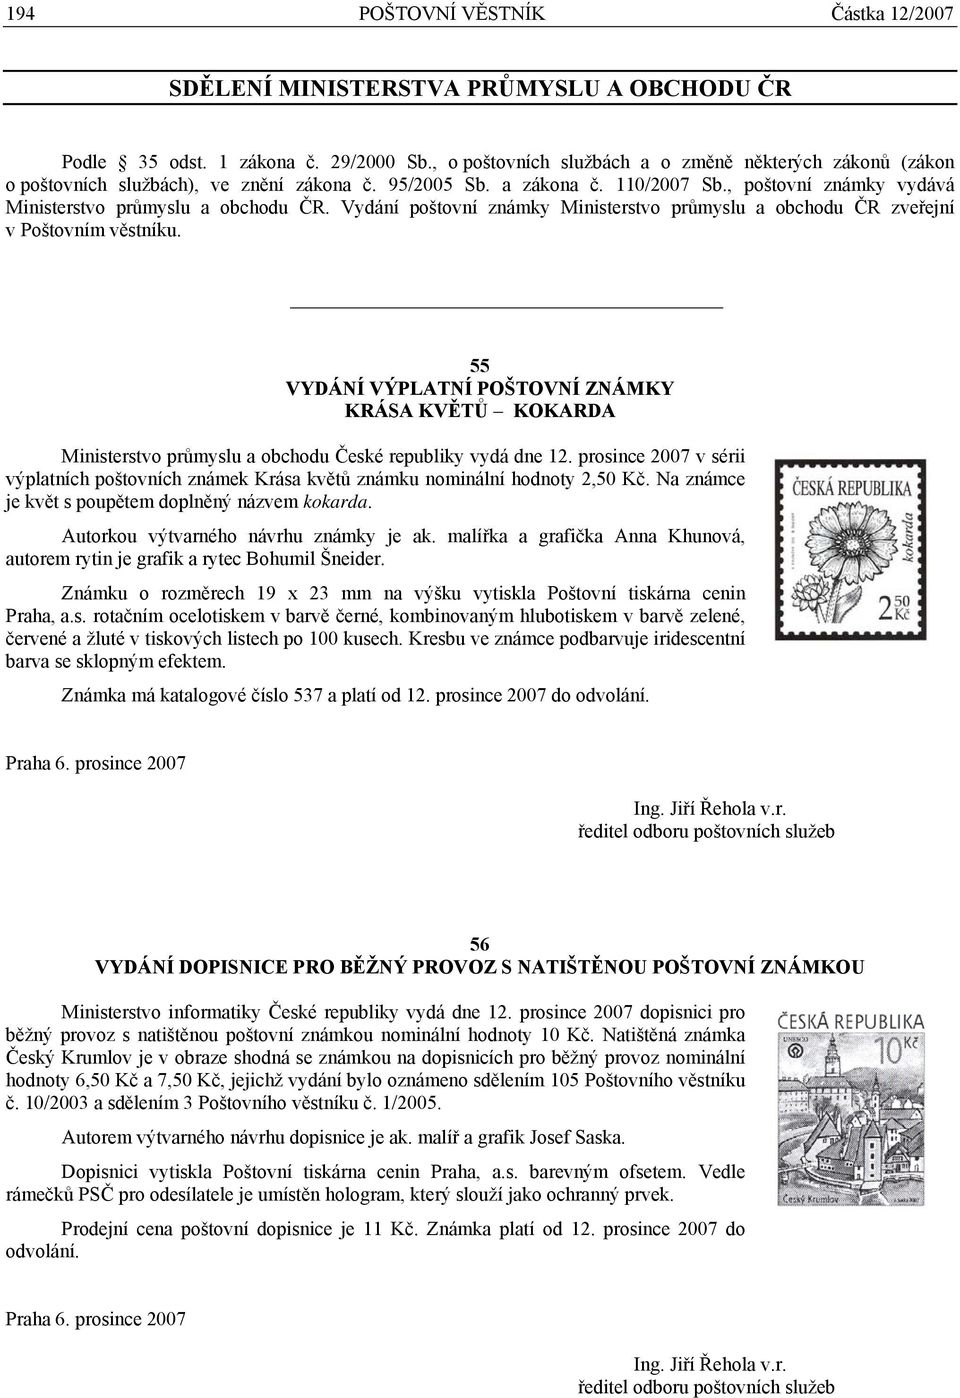 Vydání poštovní známky Ministerstvo průmyslu a obchodu ČR zveřejní v Poštovním věstníku.